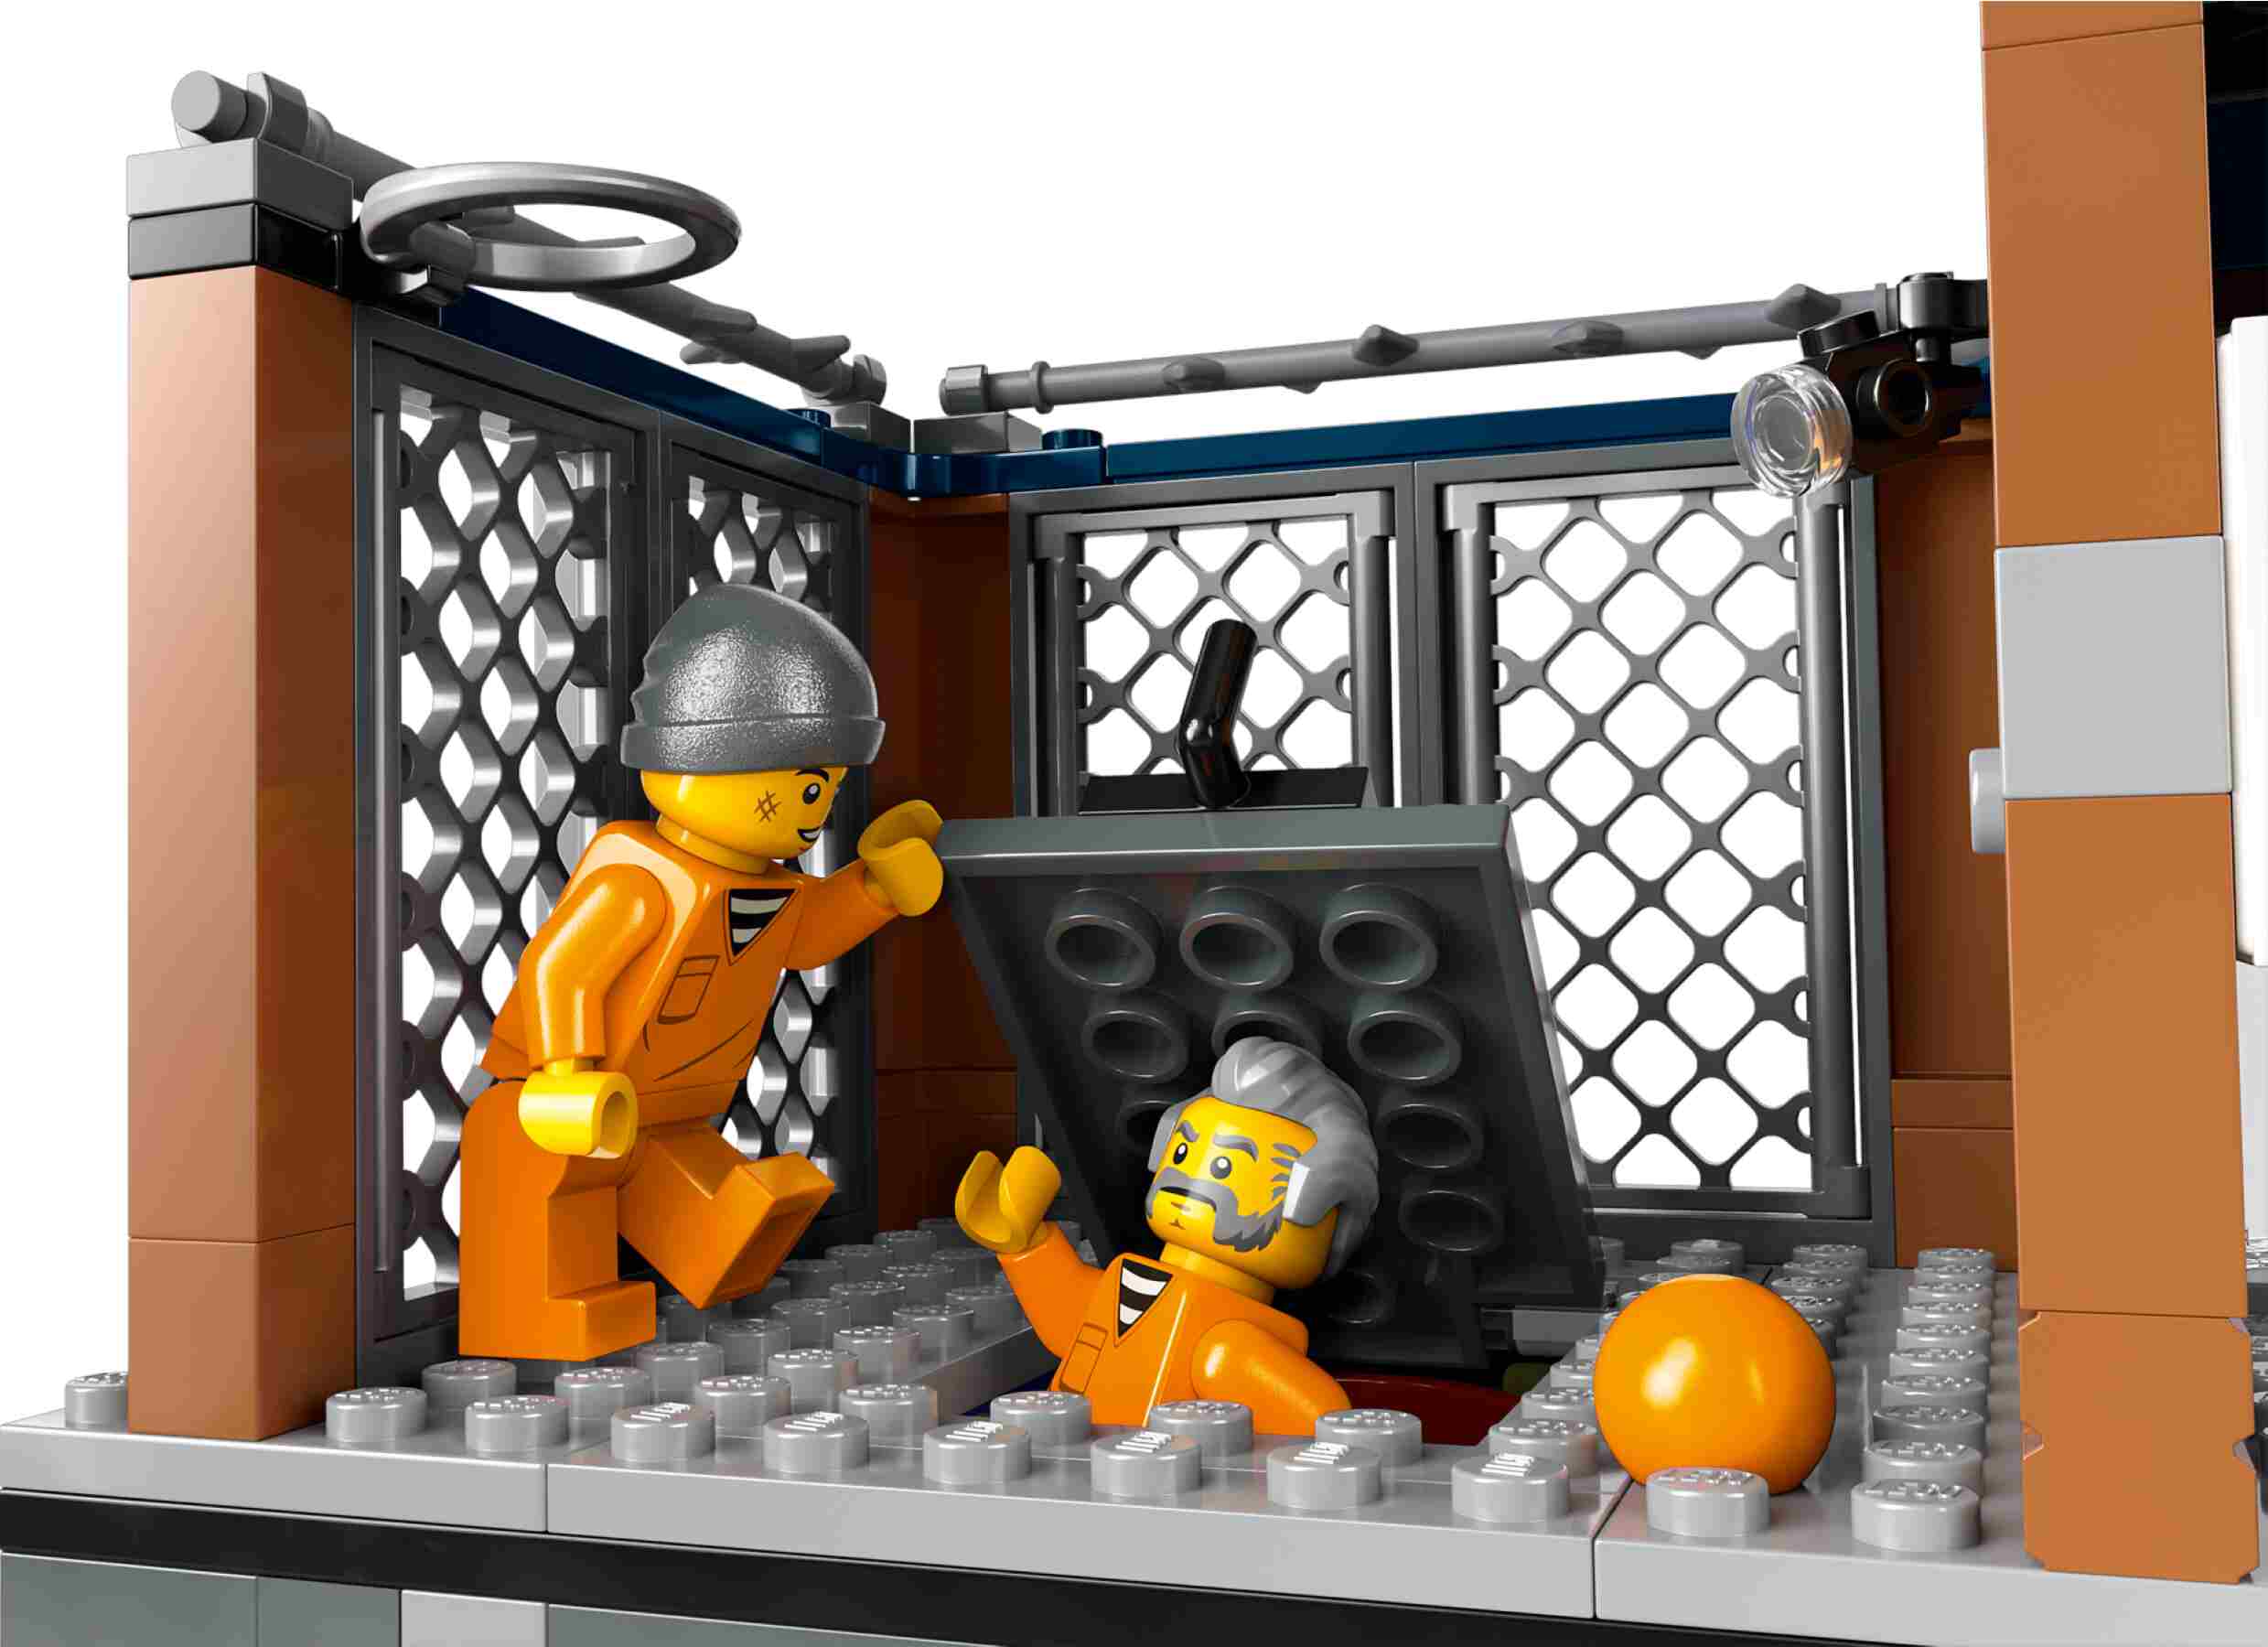 LEGO 60419 City Polizeistation auf der Gefängnisinsel, 3 Polizisten, 4 Häftlinge